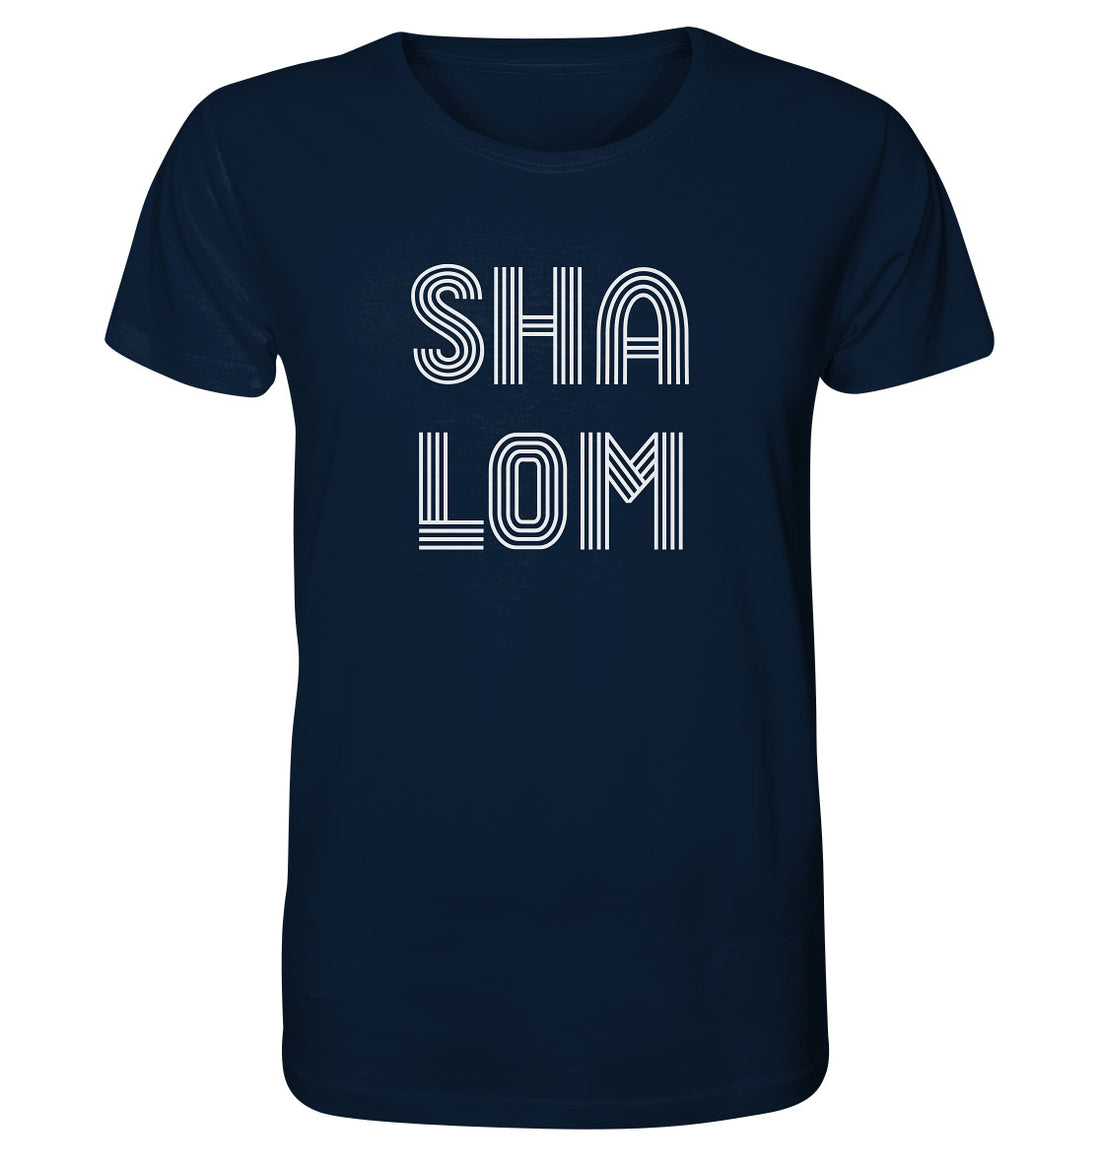 SHALOM - Organic Shirt